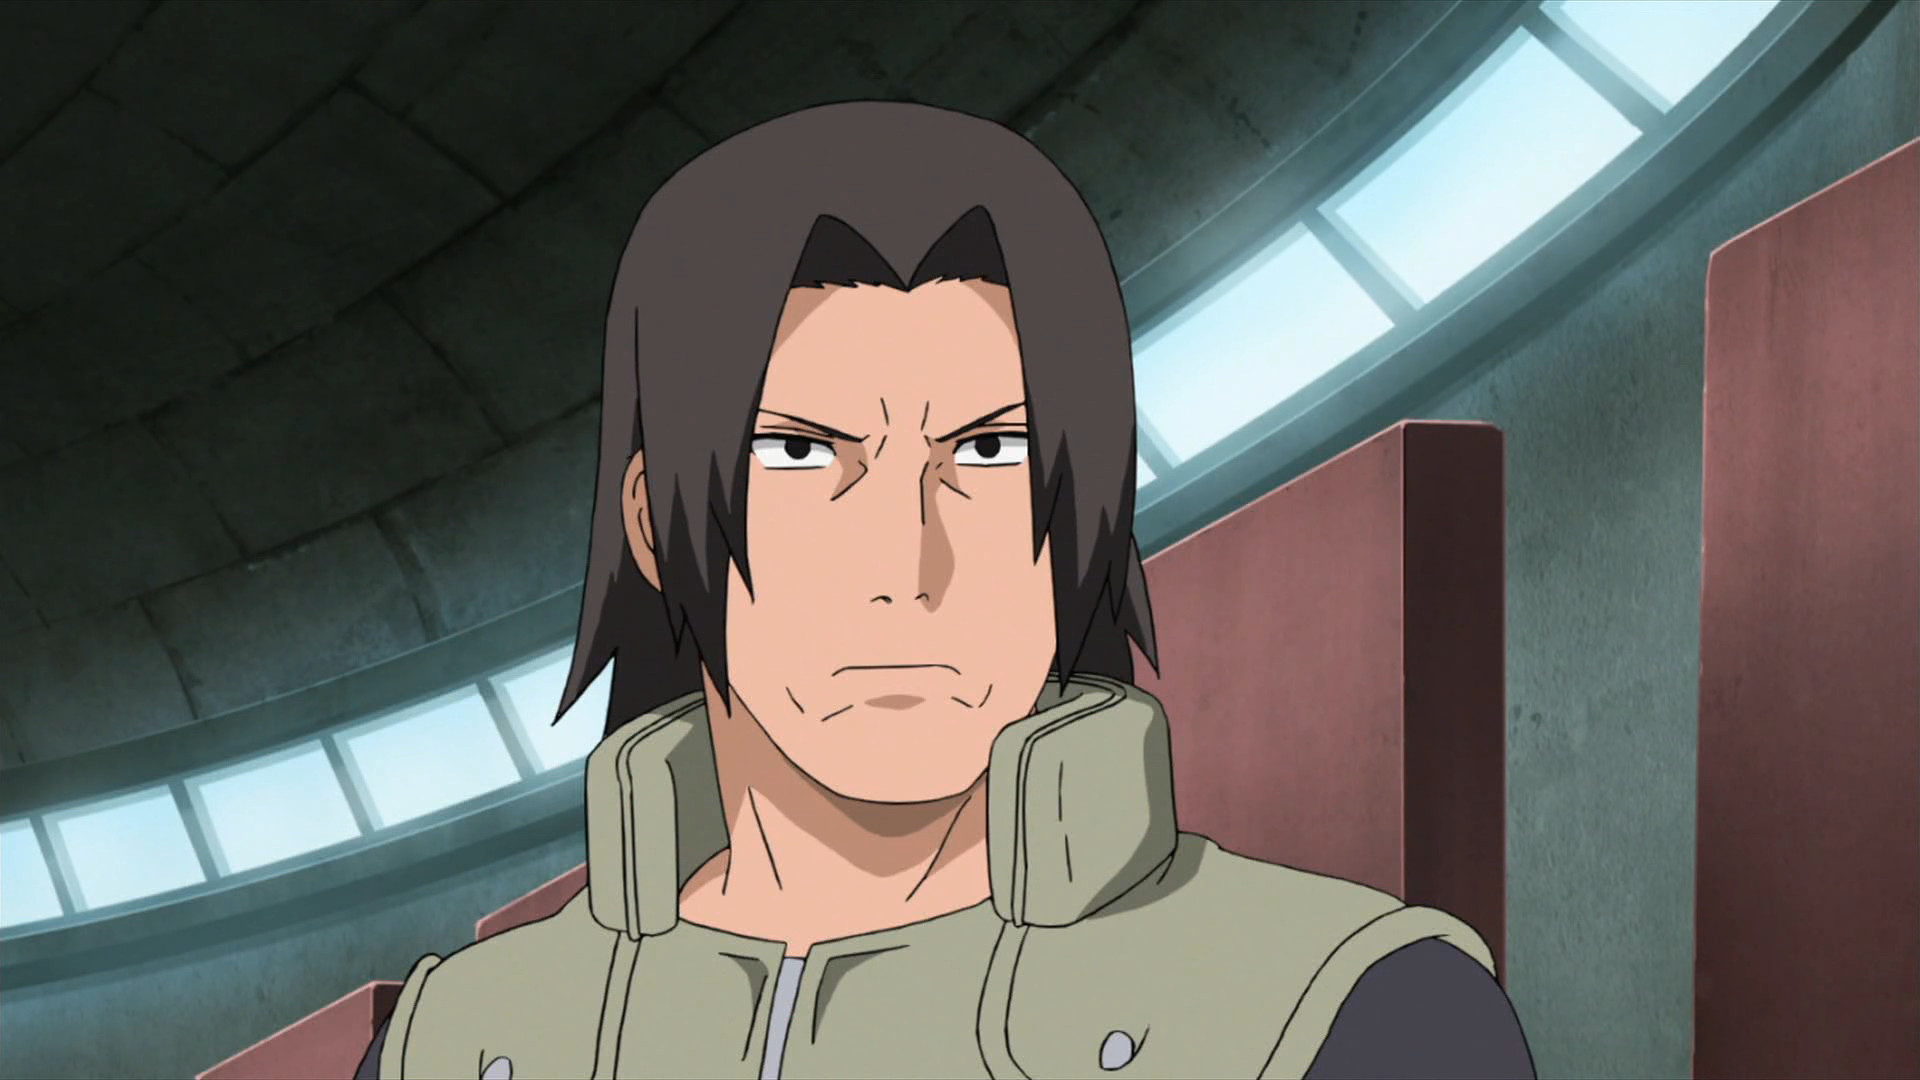 O clã Uchiha ainda teria sido eliminado se o pai de Itachi tivesse decidido lutar em Naruto?